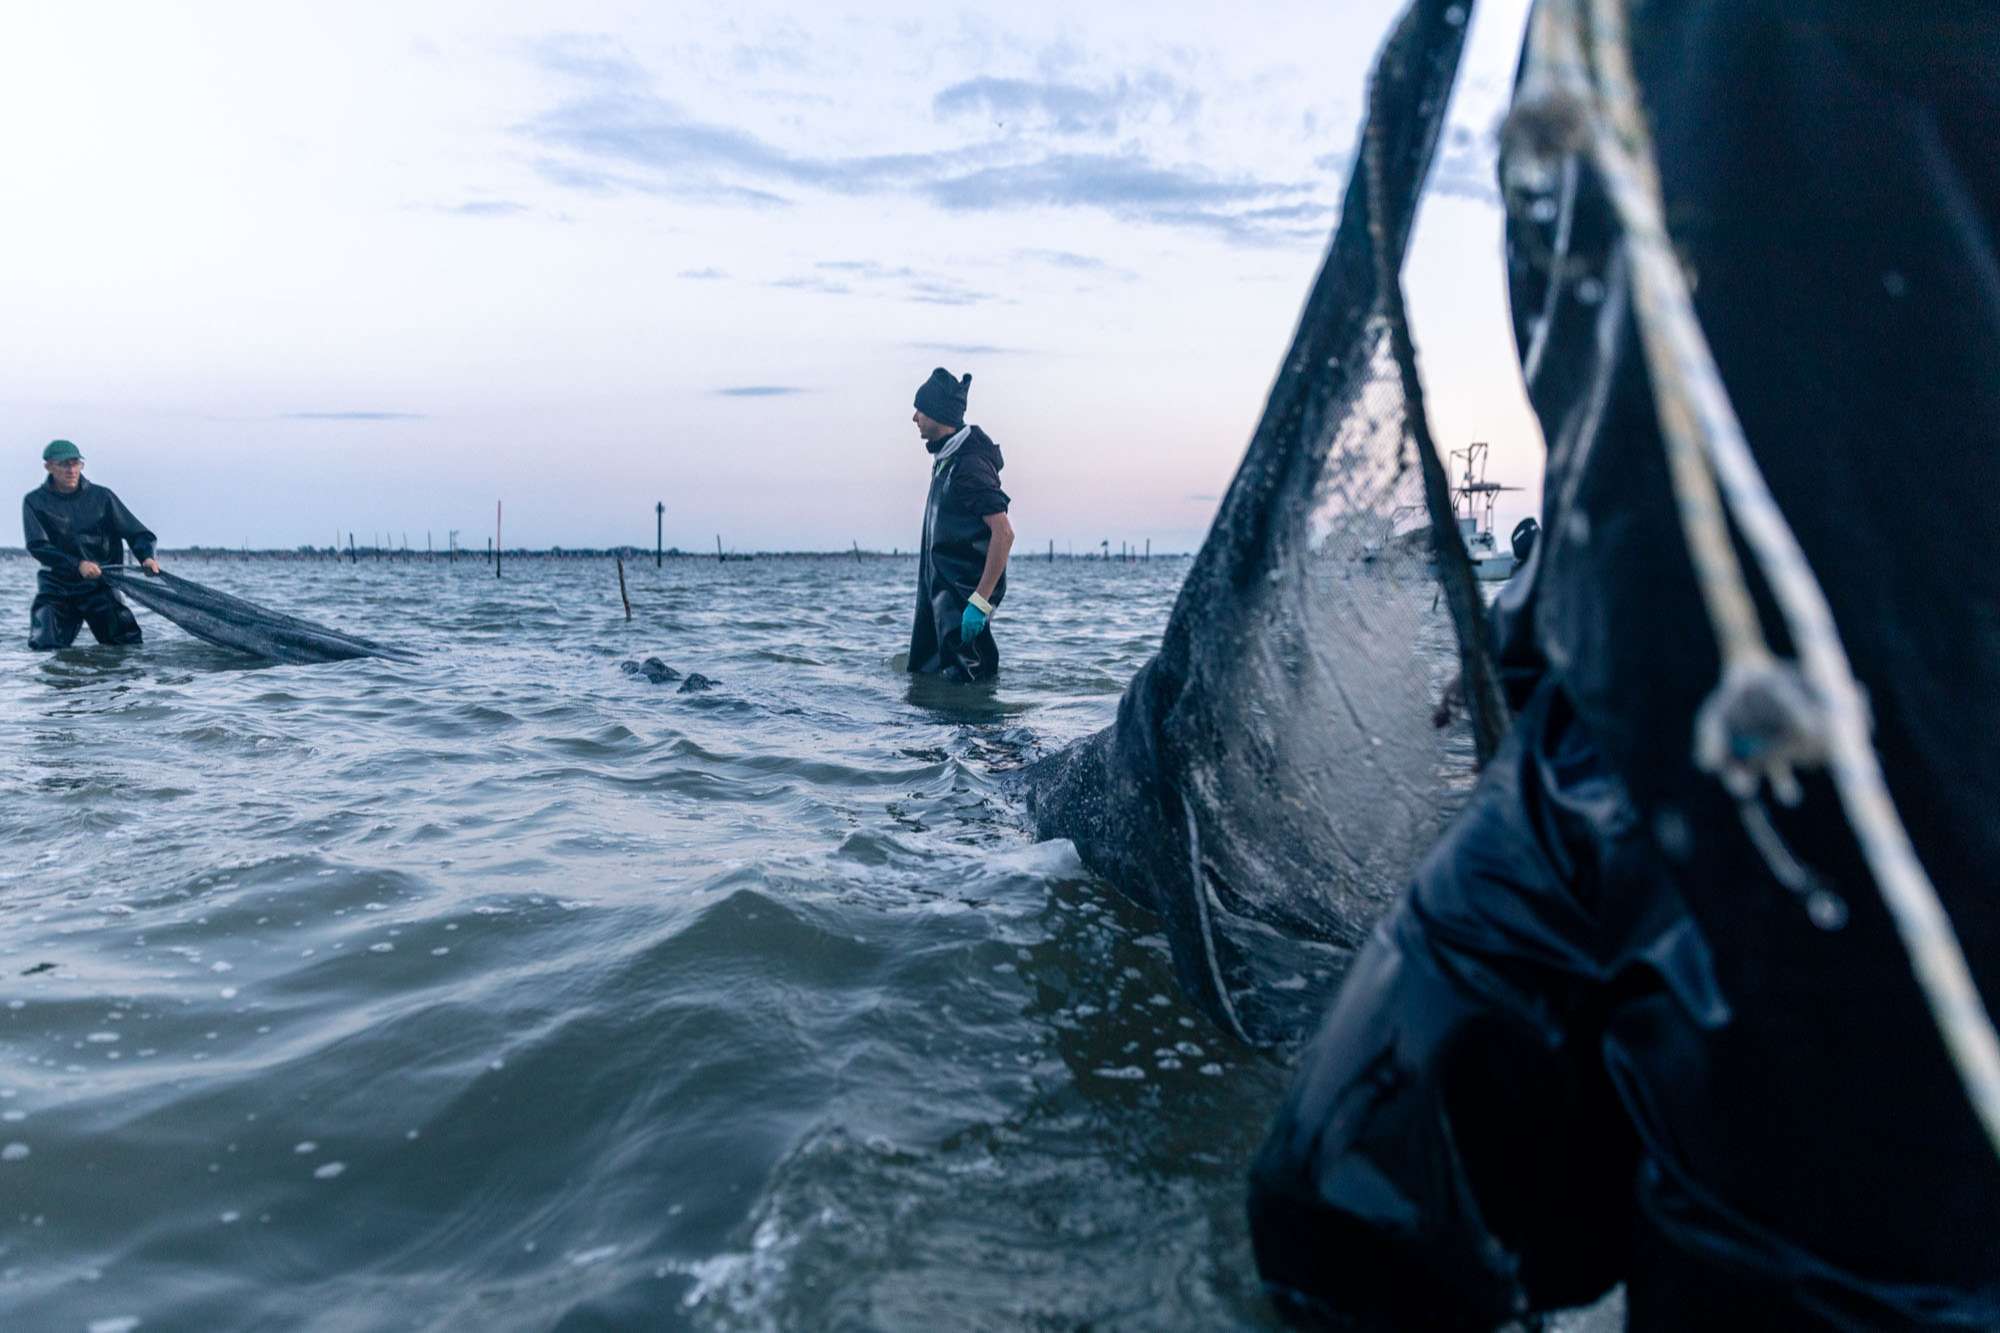 Fase di seminatura all'alba. Pescatori in mare con stivaloni stendono le reti.